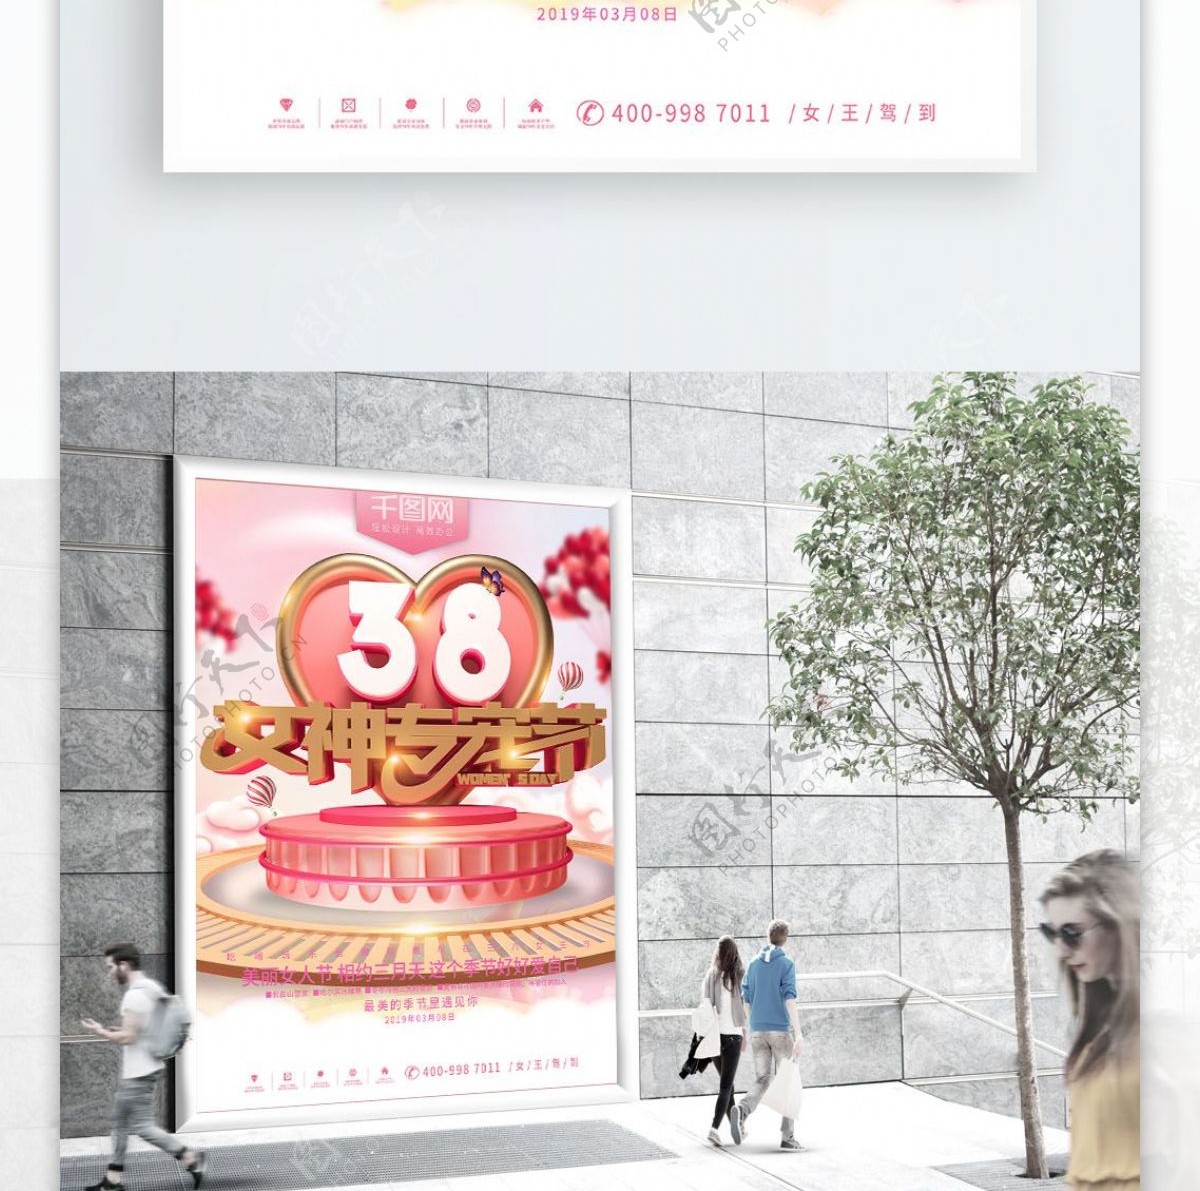 38女神节节日宣传海报